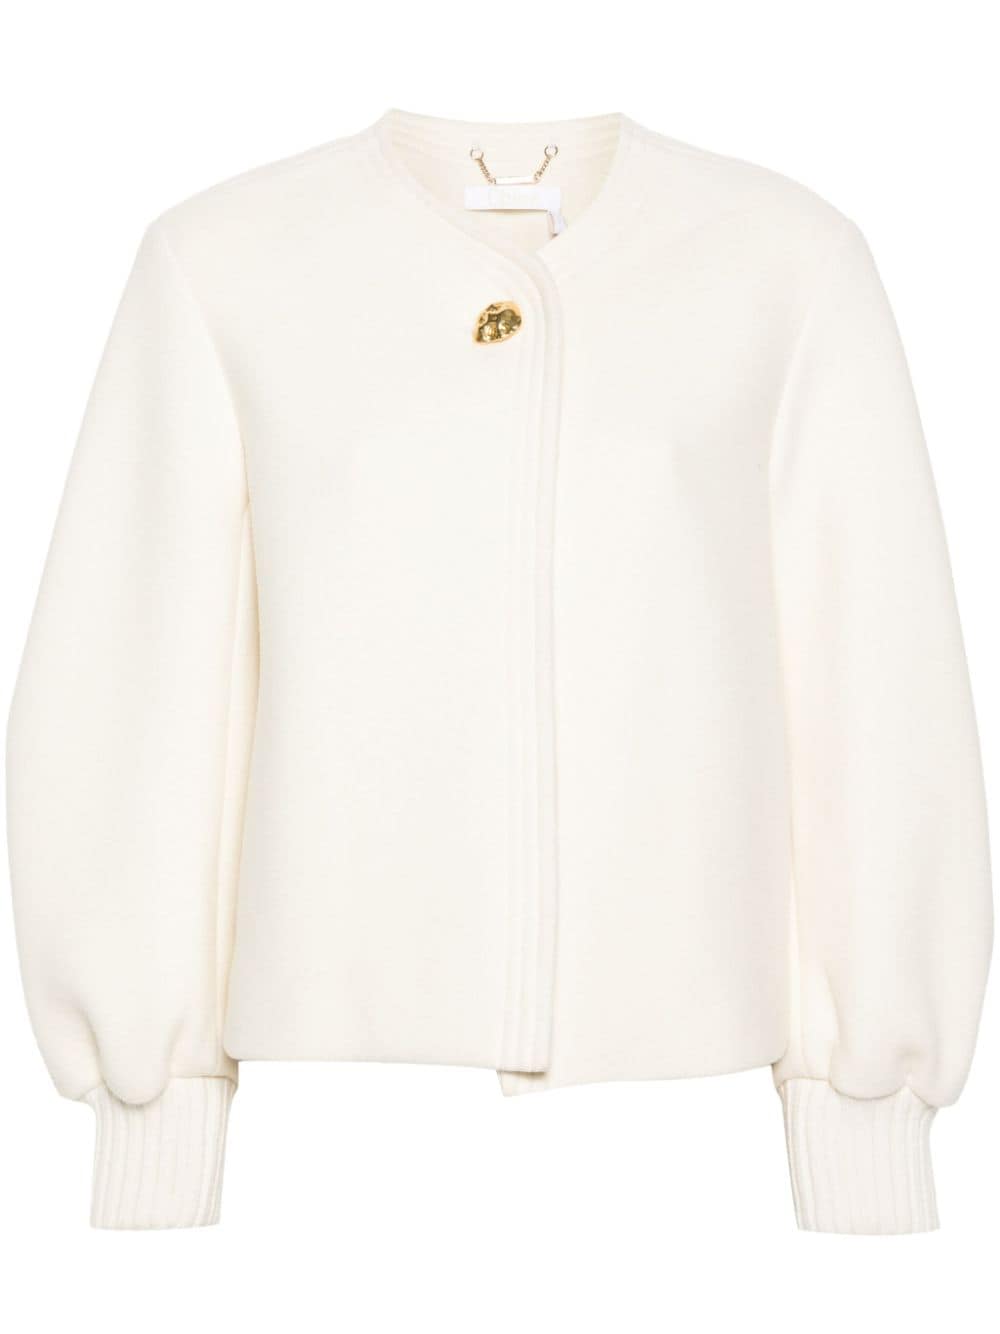 Áo khoác dài ấm áp bằng len trắng thời trang cho phụ nữ